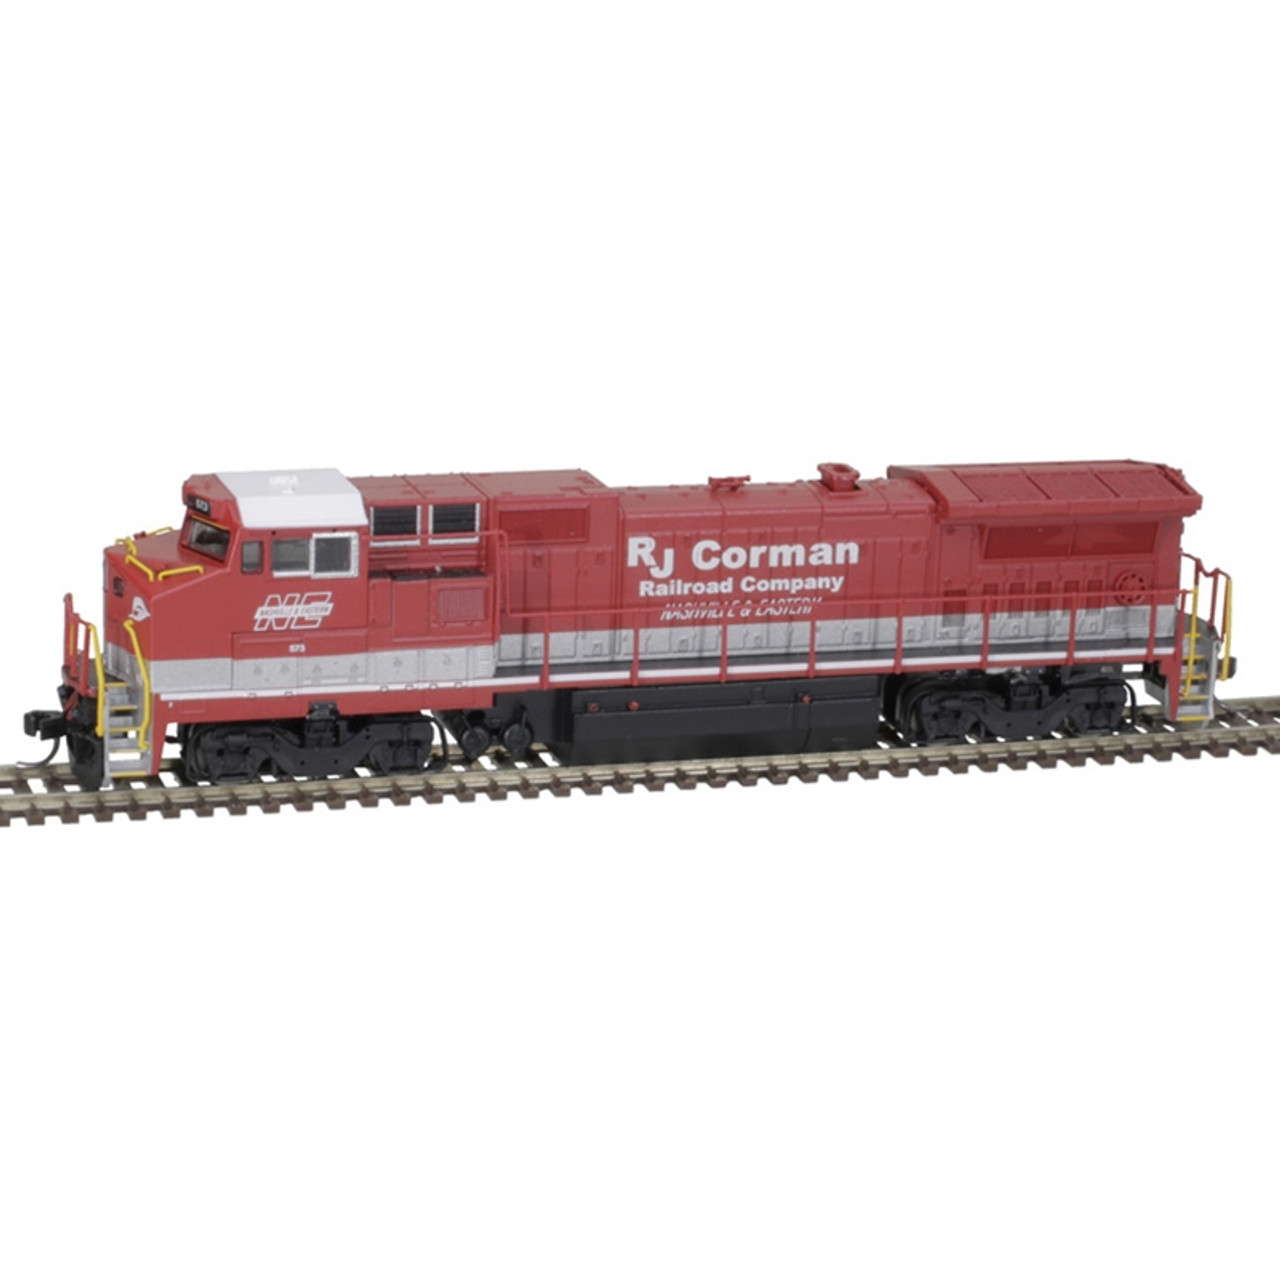 アメリカ形Nゲージ ATLAS社製 GE Dash8-40C C&NW鉄道 - 鉄道模型